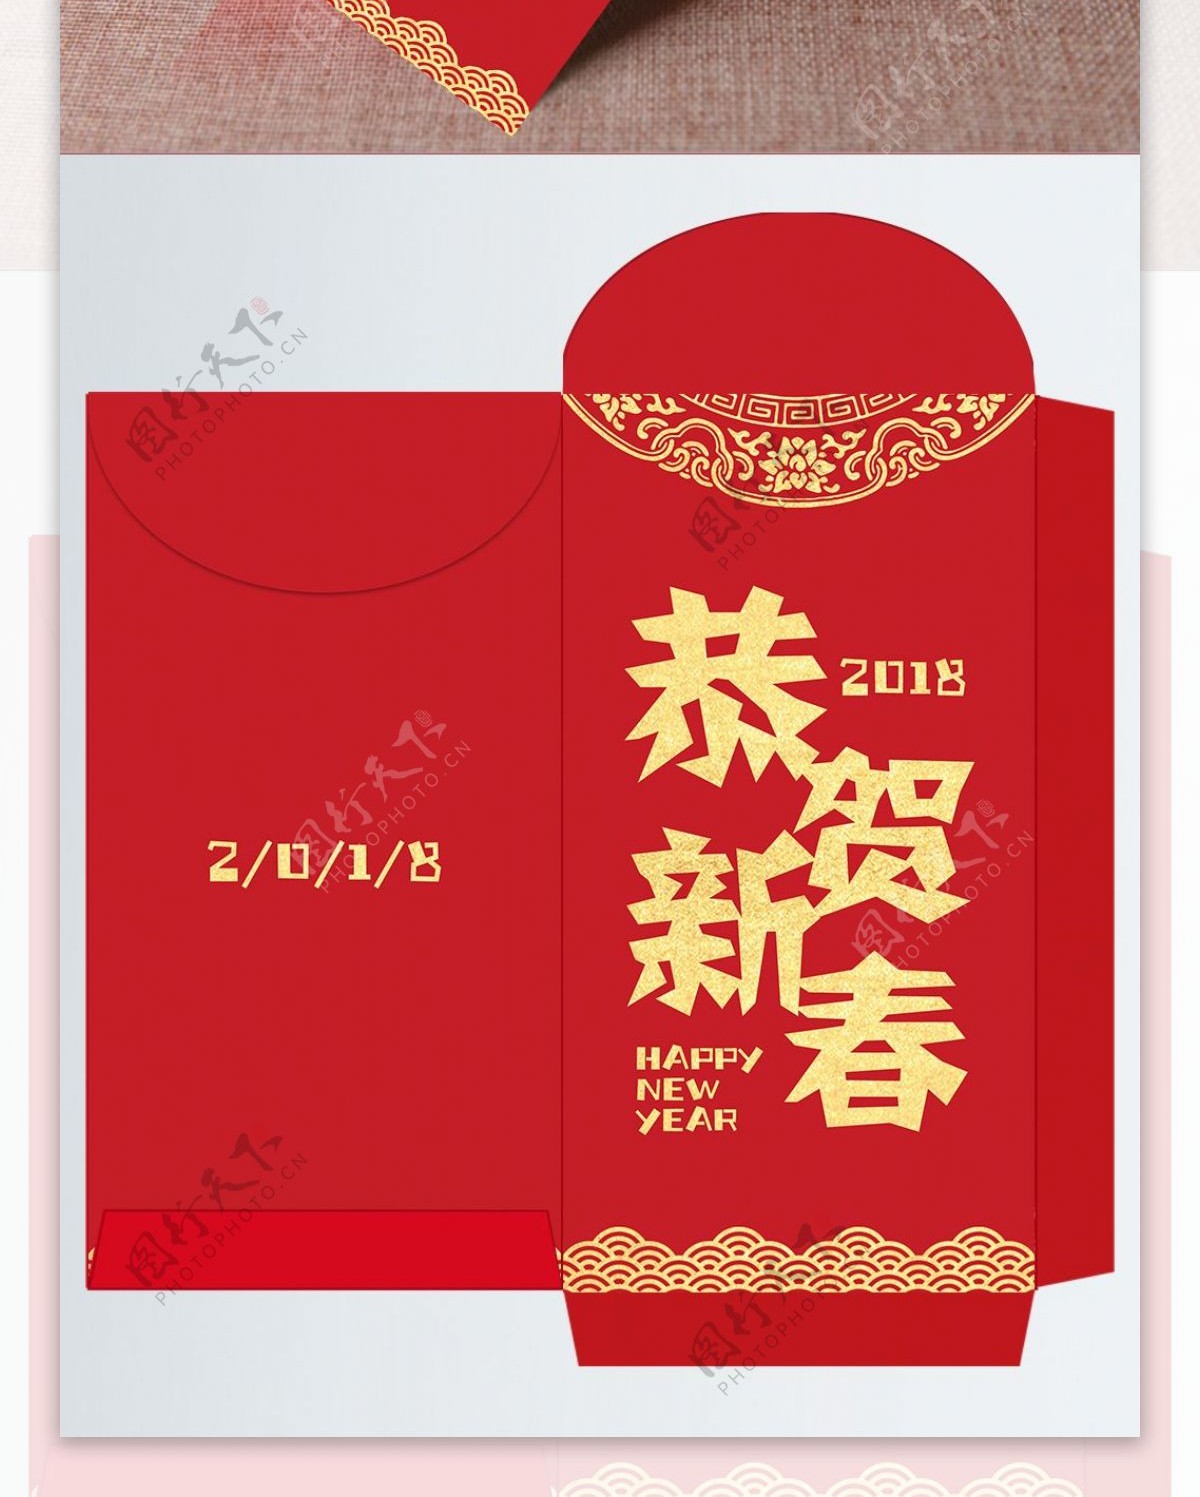 红色大气剪纸2018恭贺新春红包设计模板